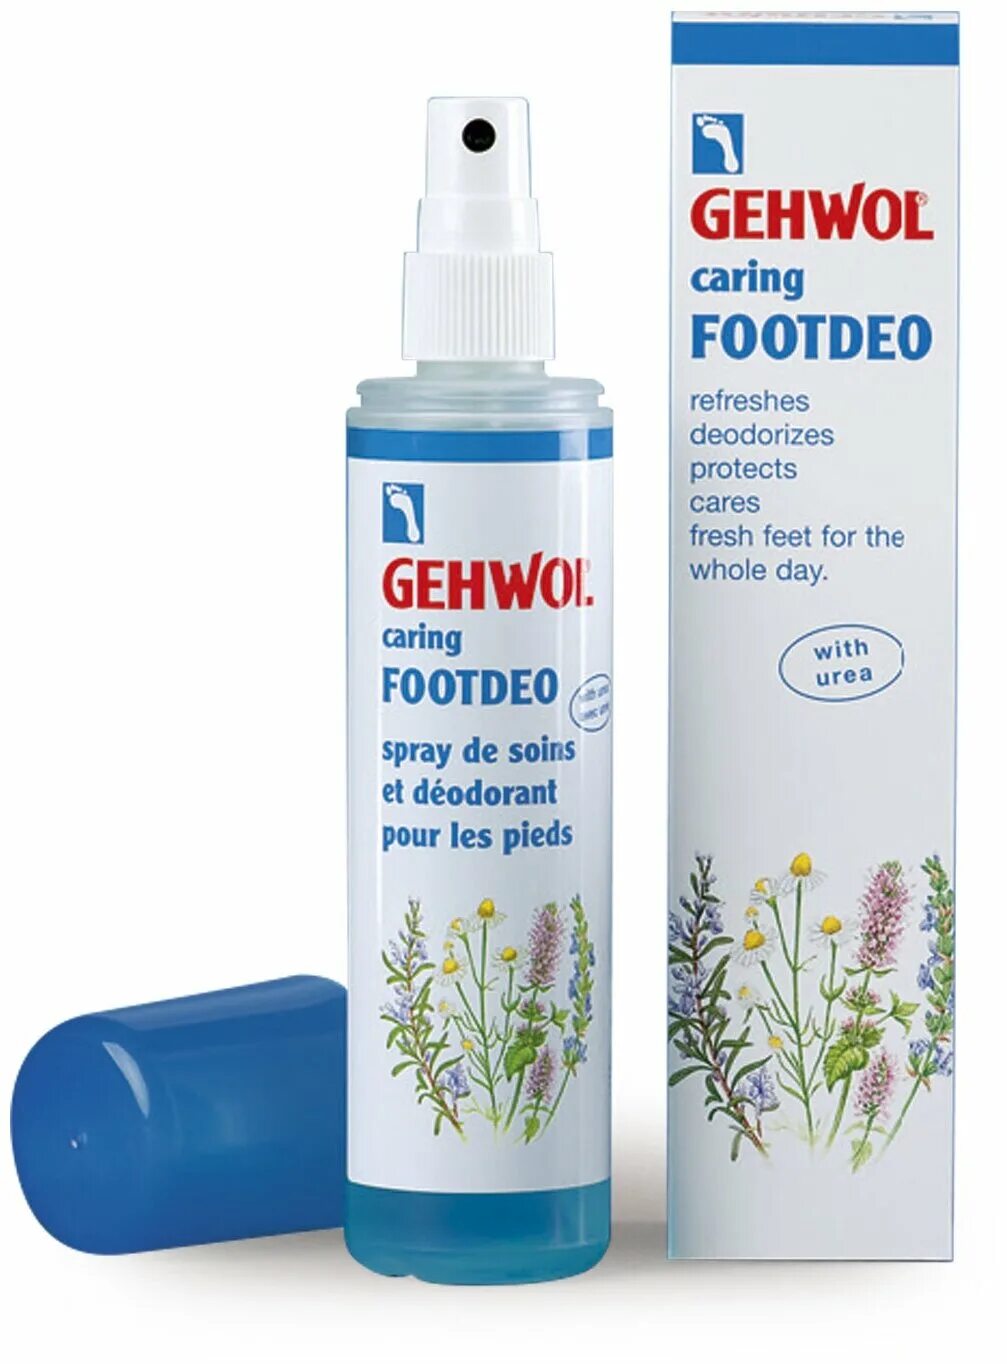 Gehwol дезодорант для ног sensitive. Gehwol дезодорант для ног 150 мл. Gehwol спрей-дезодорант для ног Footdeo carring. Ухаживающий дезодорант для ног Gehwol caring Footdeo 150 мл. Купить gehwol для ног